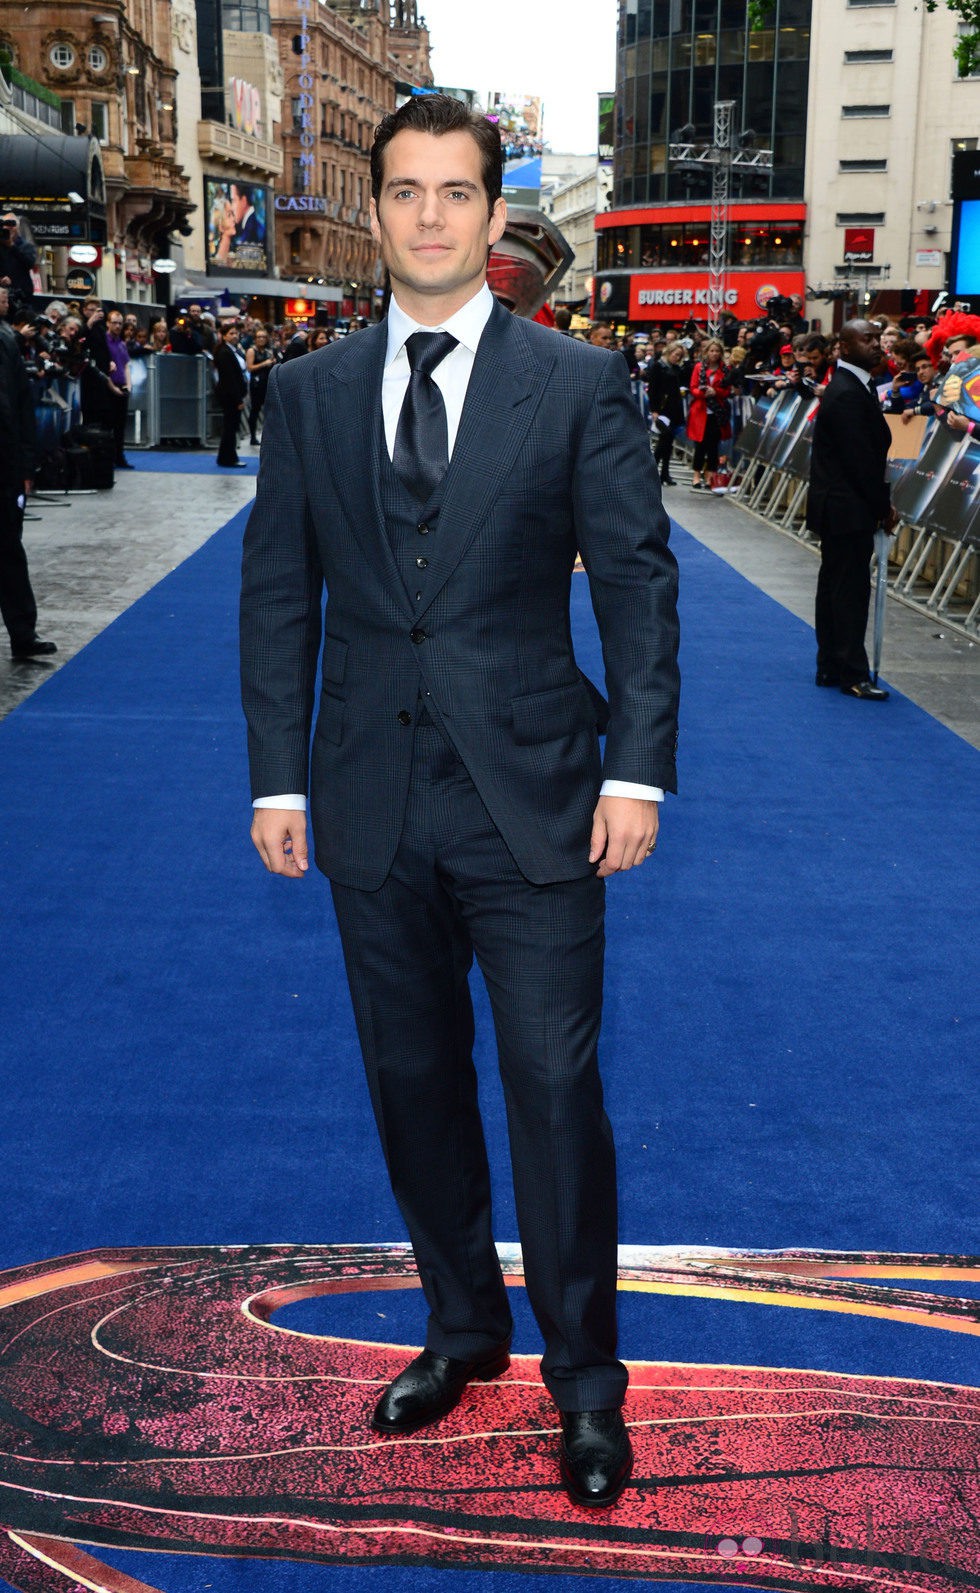 Henry Cavill en el estreno europeo de 'El Hombre de Acero' en Londres